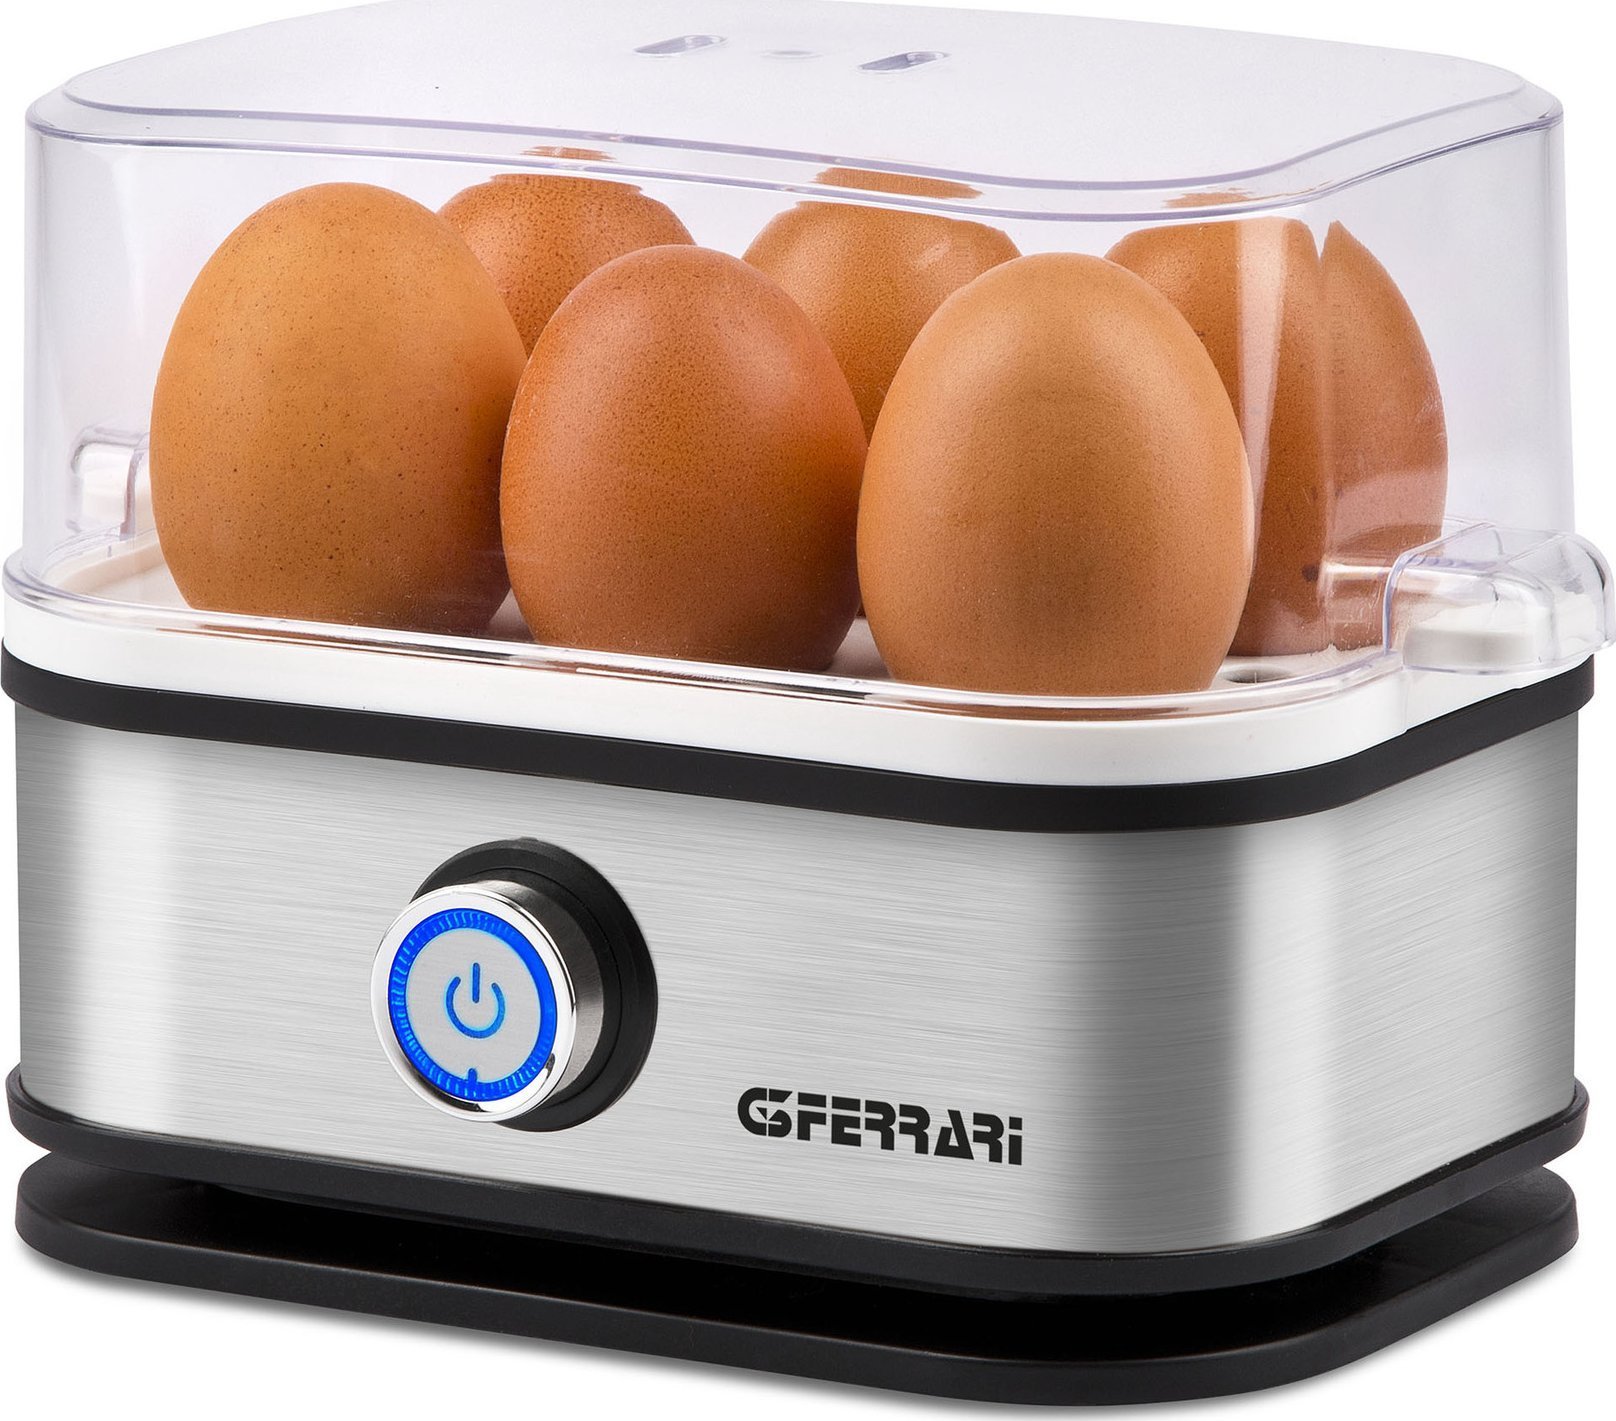 Aragaz ouă G3Ferrari Arată ouă G3Ferrari G10156